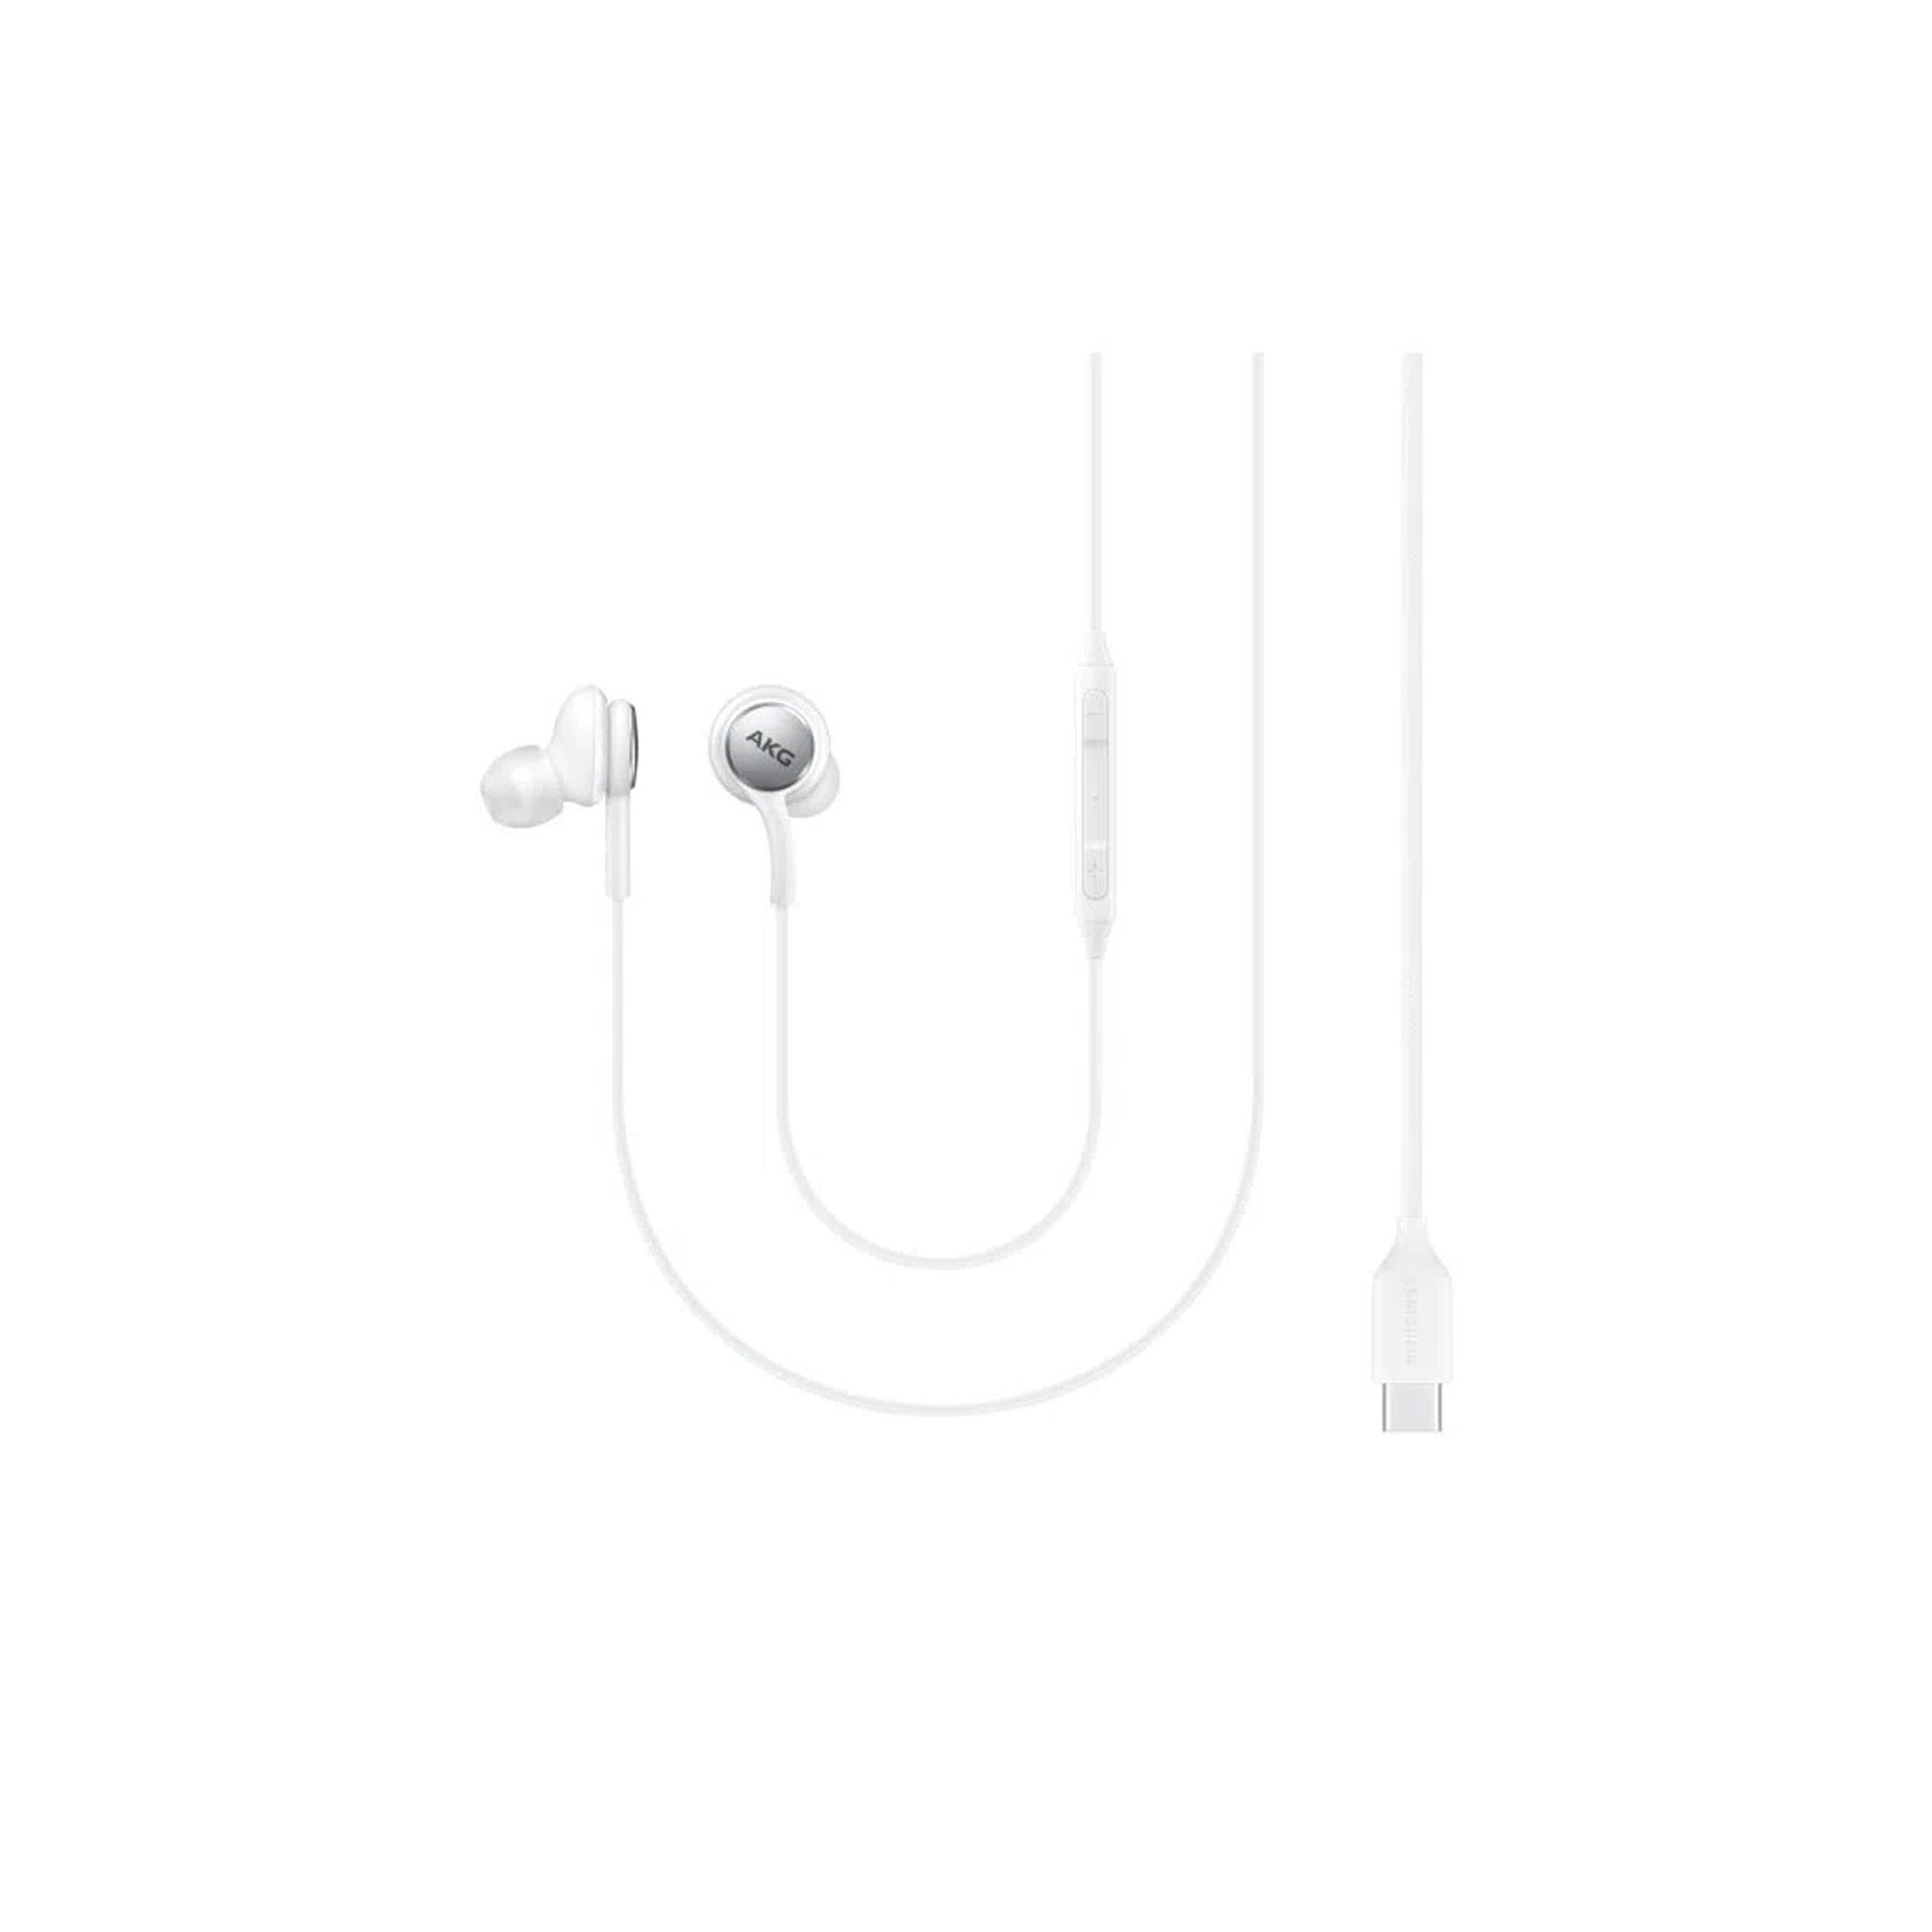 Samsung - In Ear Type C Earphones, AKG, Note 10 , Note 10 Plus, Tab S6 - White